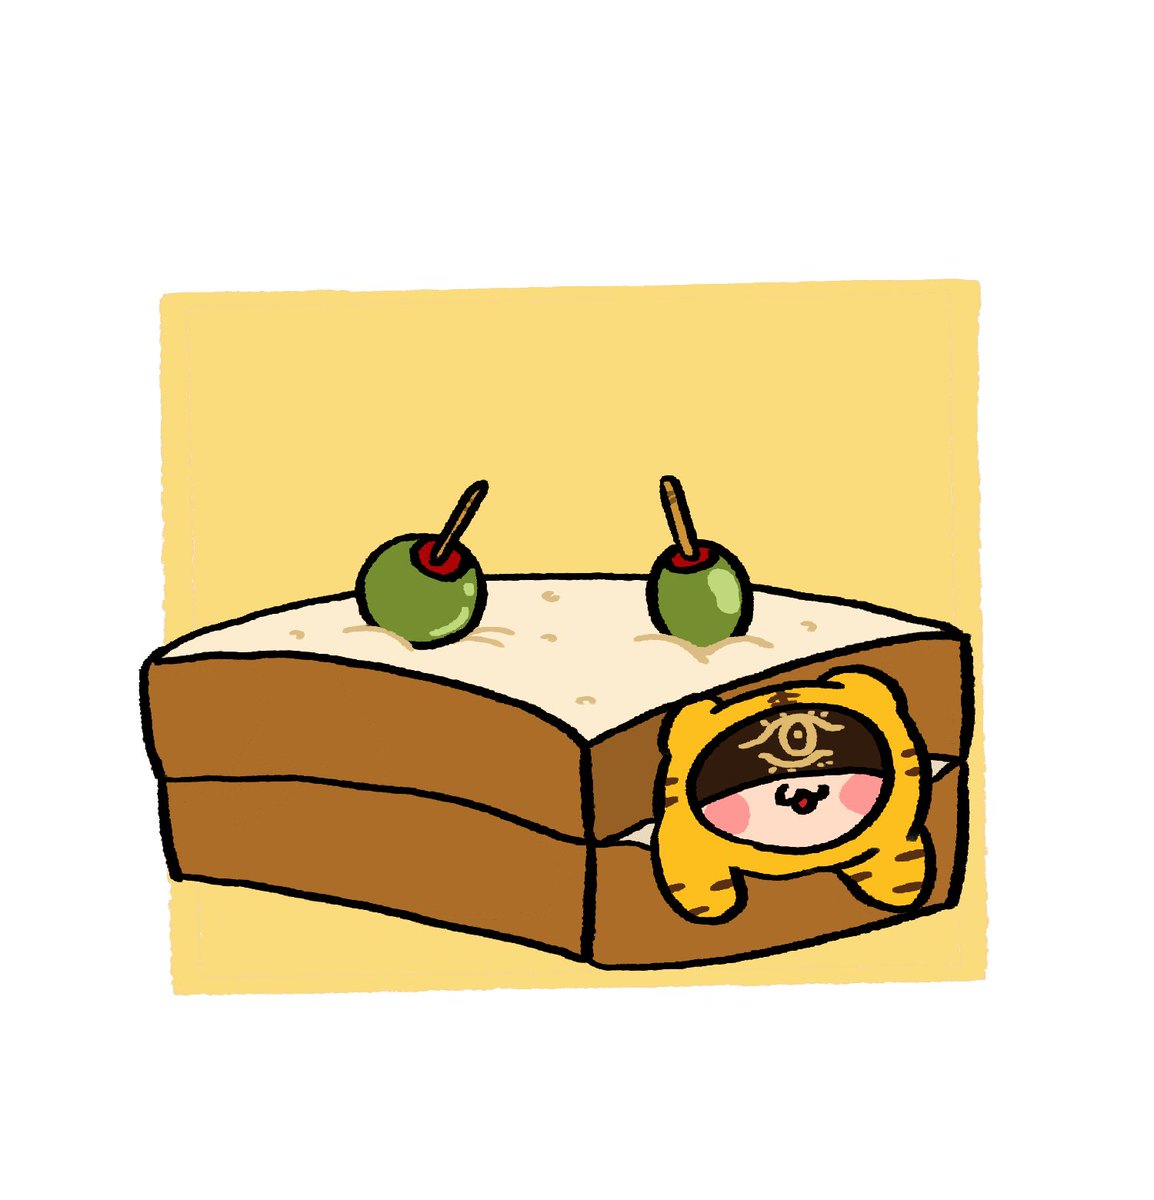 「サンドイッチに挟まれたトラちゃんとギリギリで回避するトラちゃん 」|🥞麦茶🥪(Mugi)のイラスト